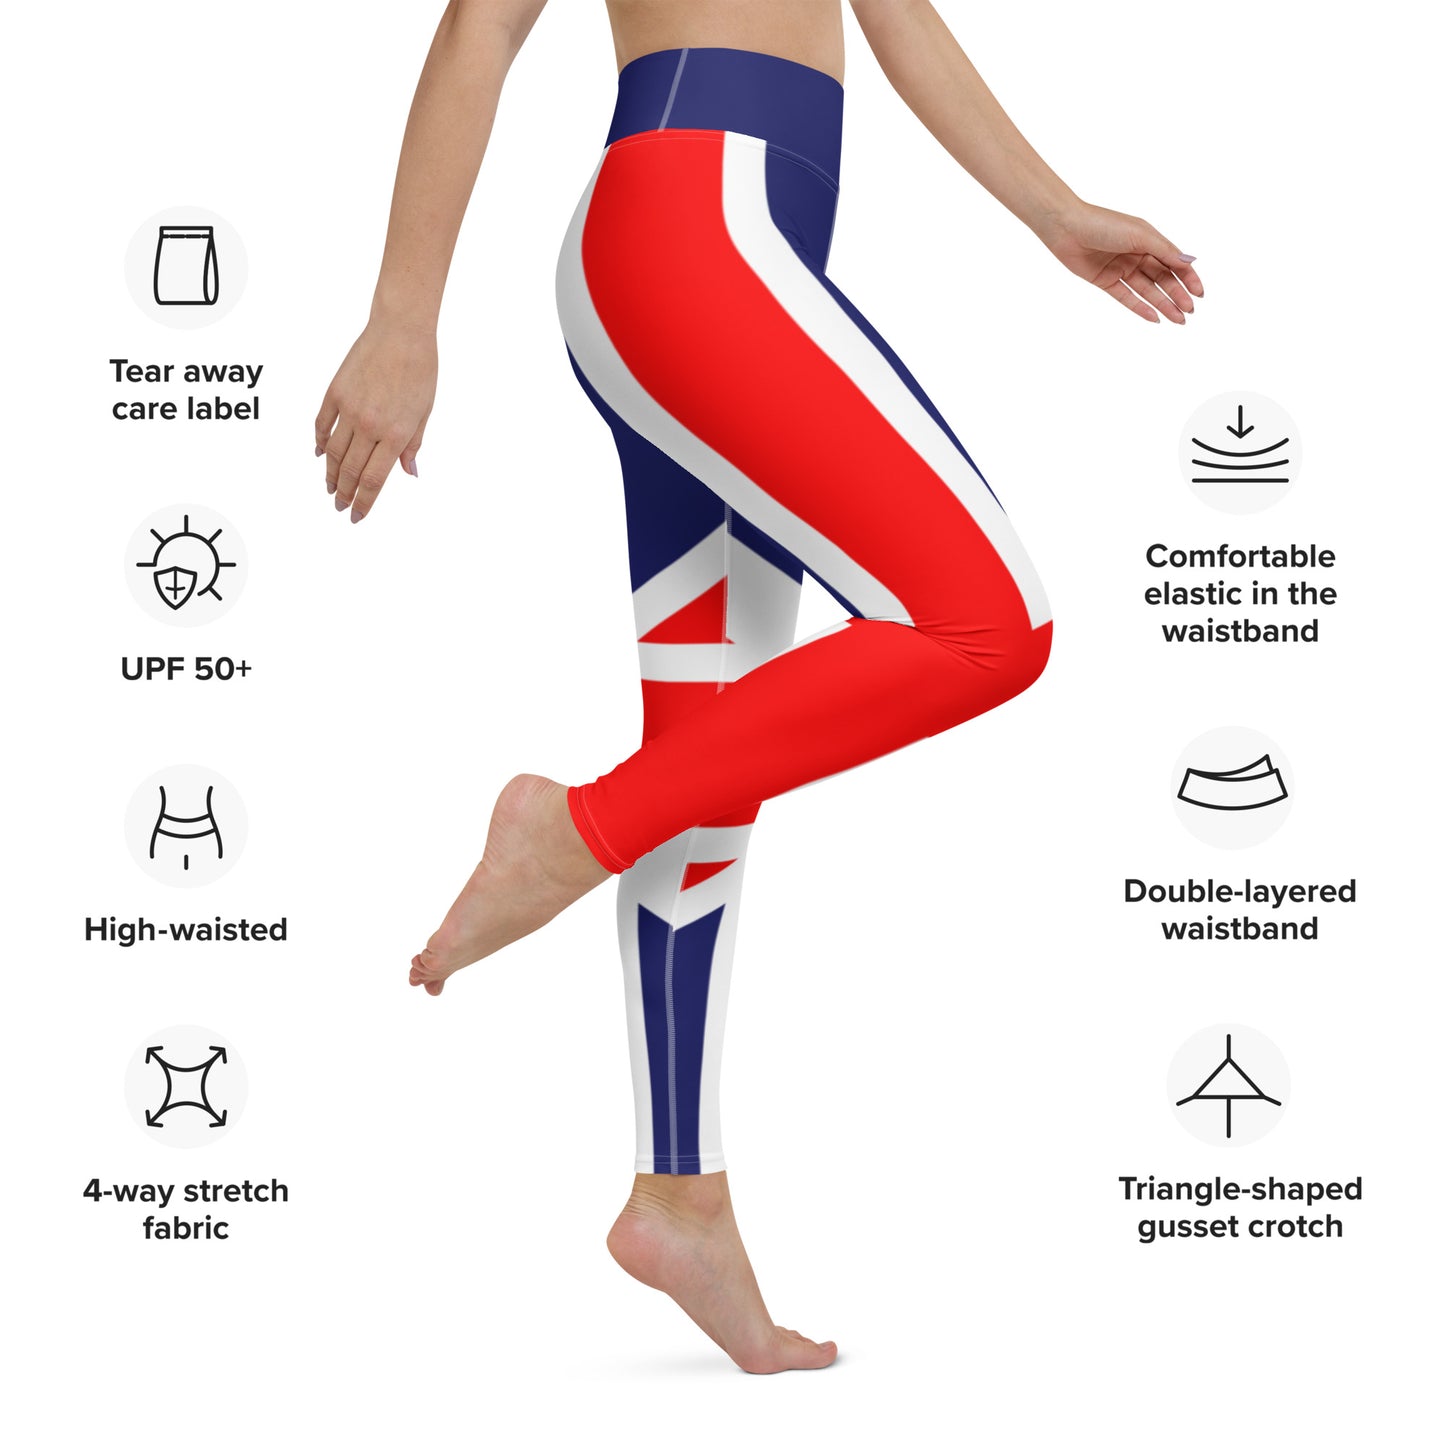 Pantaloni di Yoga Union Jack / leggings yoga / Leggings / Inside Pocket